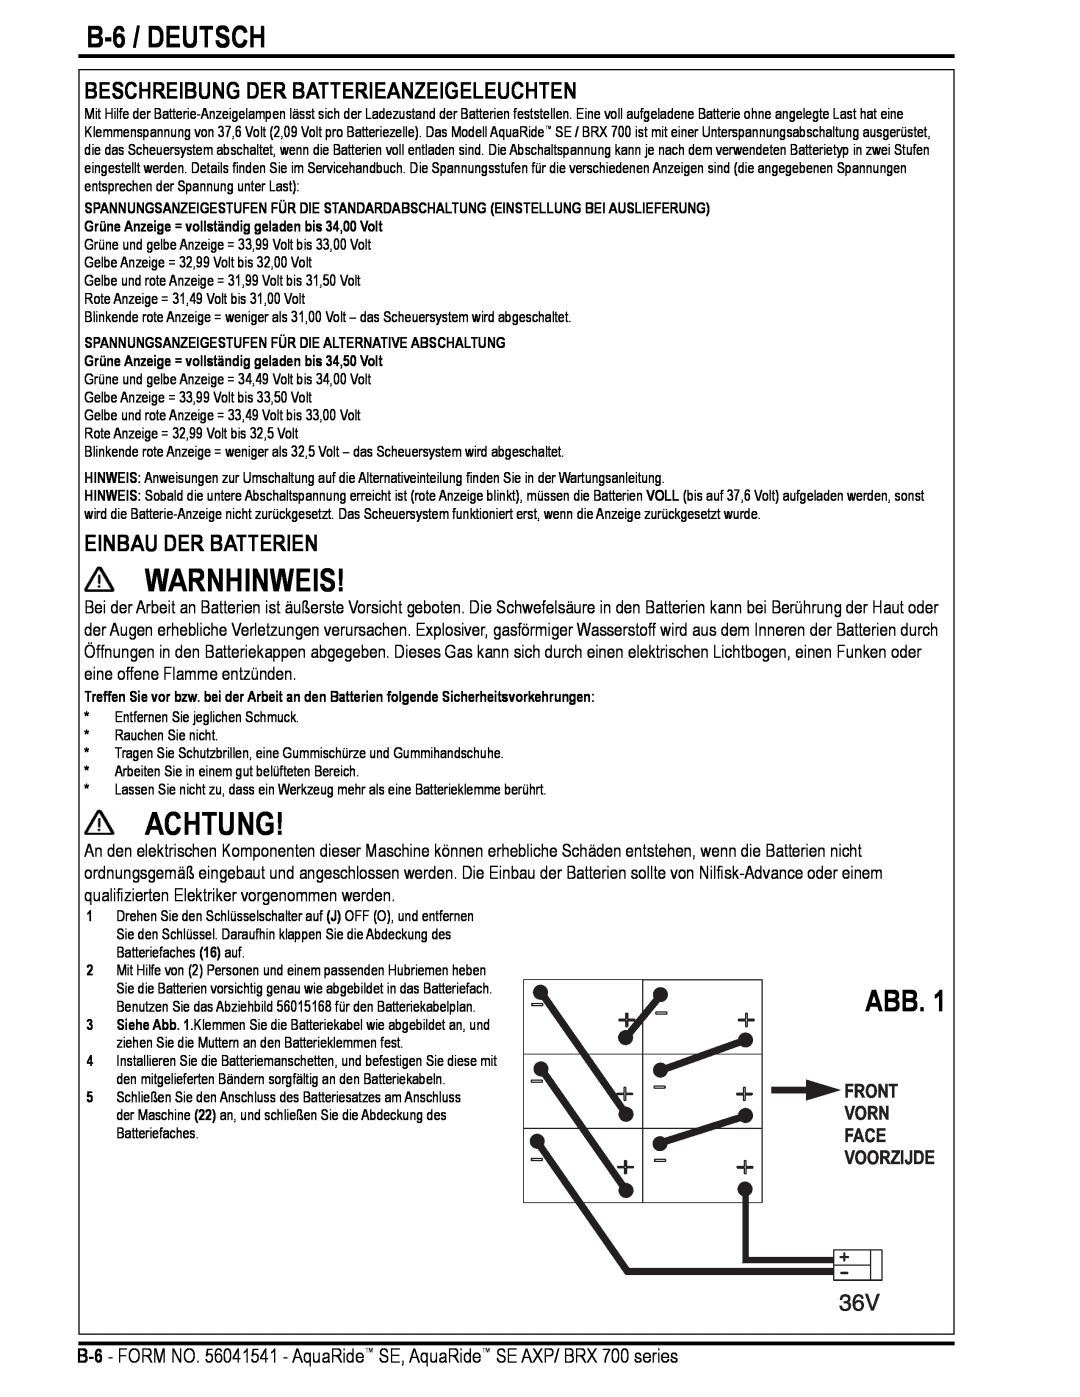 Nilfisk-Advance America BRX 700 Series manual Achtung, B-6 / DEUTSCH, Beschreibung Der Batterieanzeigeleuchten, Warnhinweis 